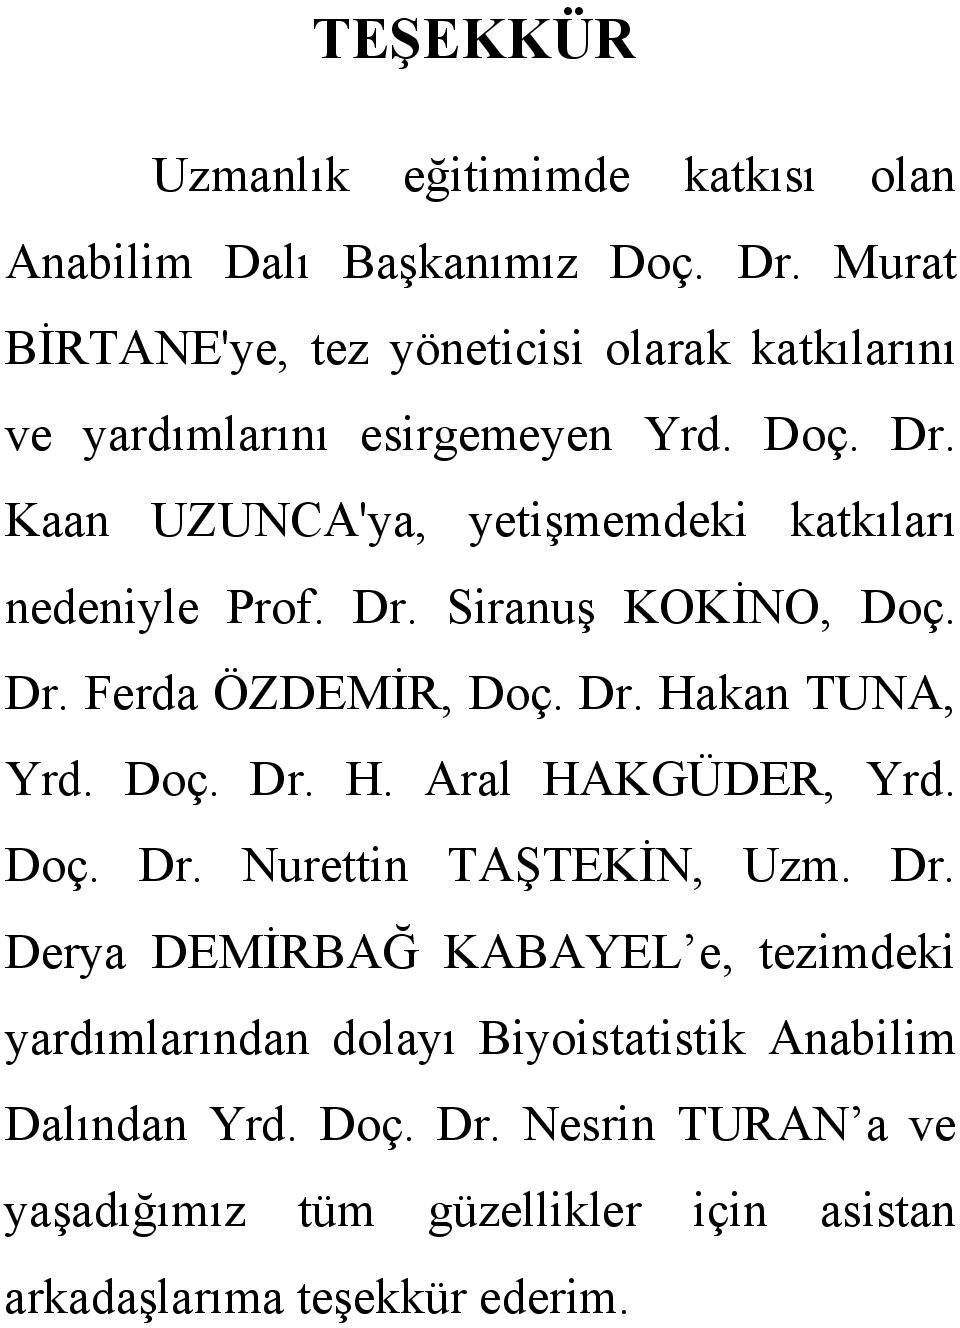 Kaan UZUNCA'ya, yetişmemdeki katkıları nedeniyle Prof. Dr. Siranuş KOKİNO, Doç. Dr. Ferda ÖZDEMİR, Doç. Dr. Hakan TUNA, Yrd. Doç. Dr. H. Aral HAKGÜDER, Yrd.